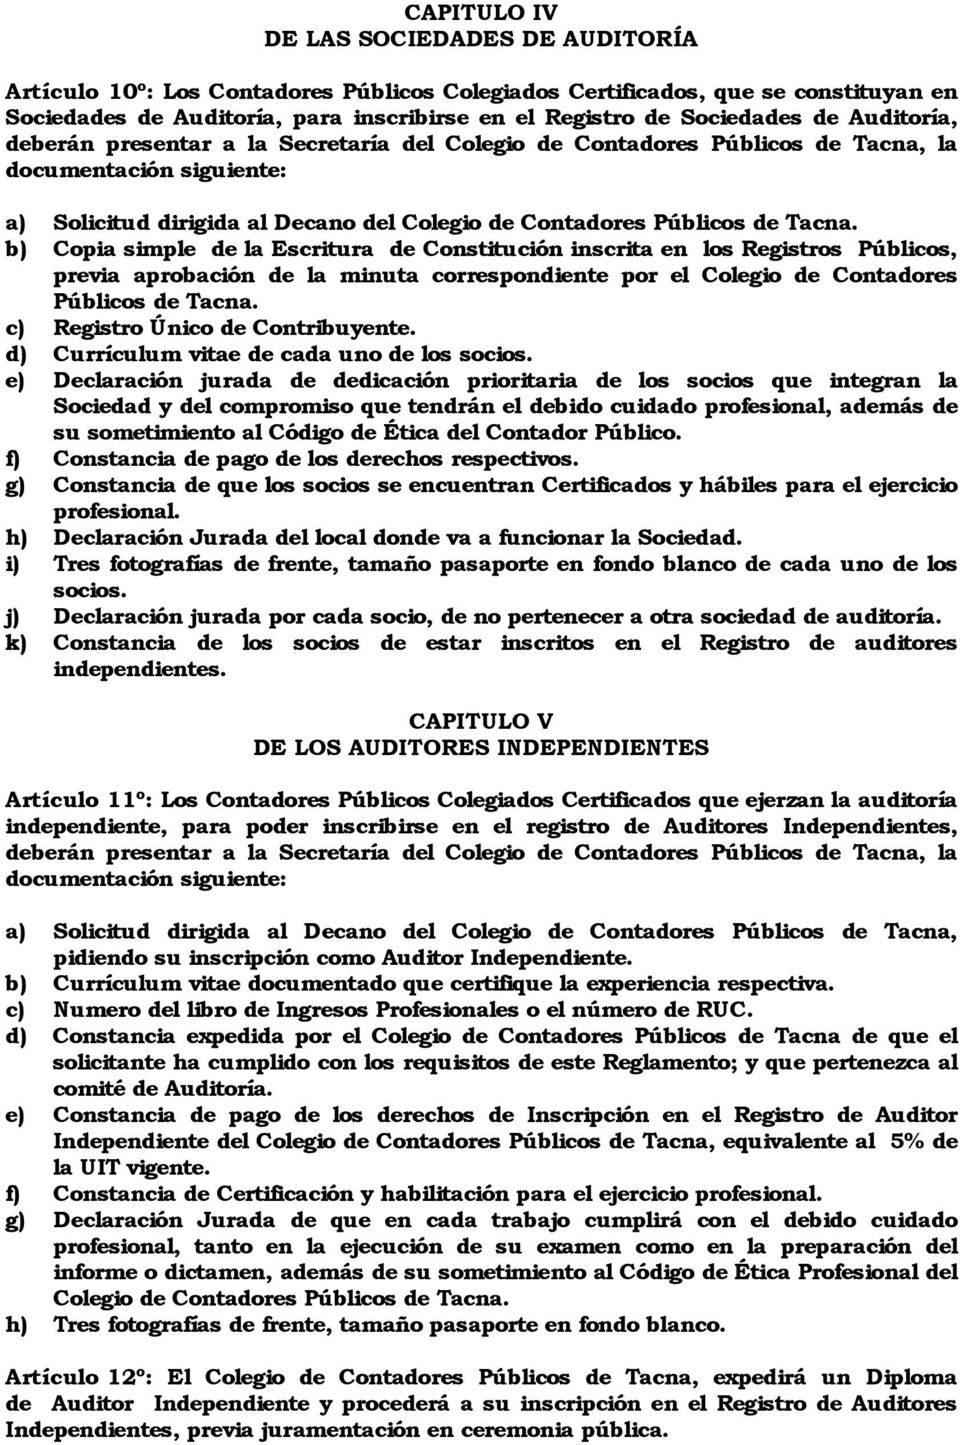 b) Copia simple de la Escritura de Constitución inscrita en los Registros Públicos, previa aprobación de la minuta correspondiente por el Colegio de Contadores Públicos de Tacna.